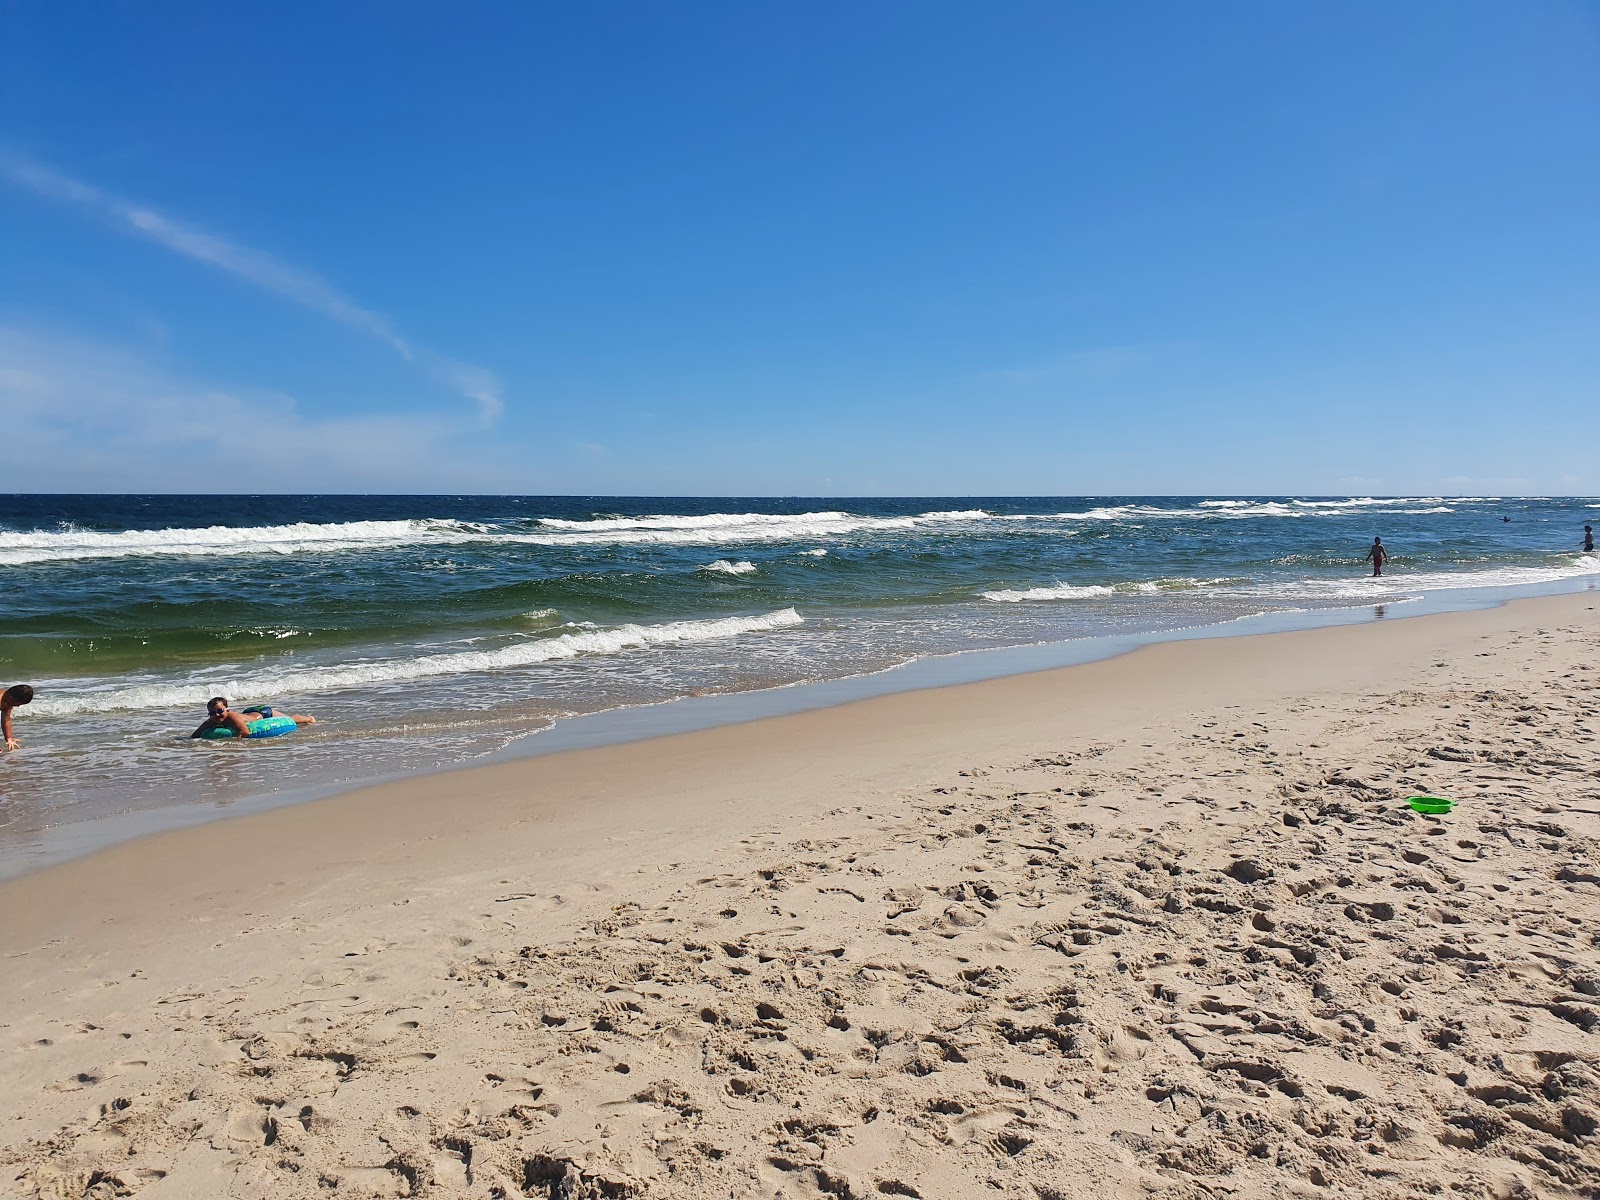 Fotografie cu Jurata Beach - locul popular printre cunoscătorii de relaxare